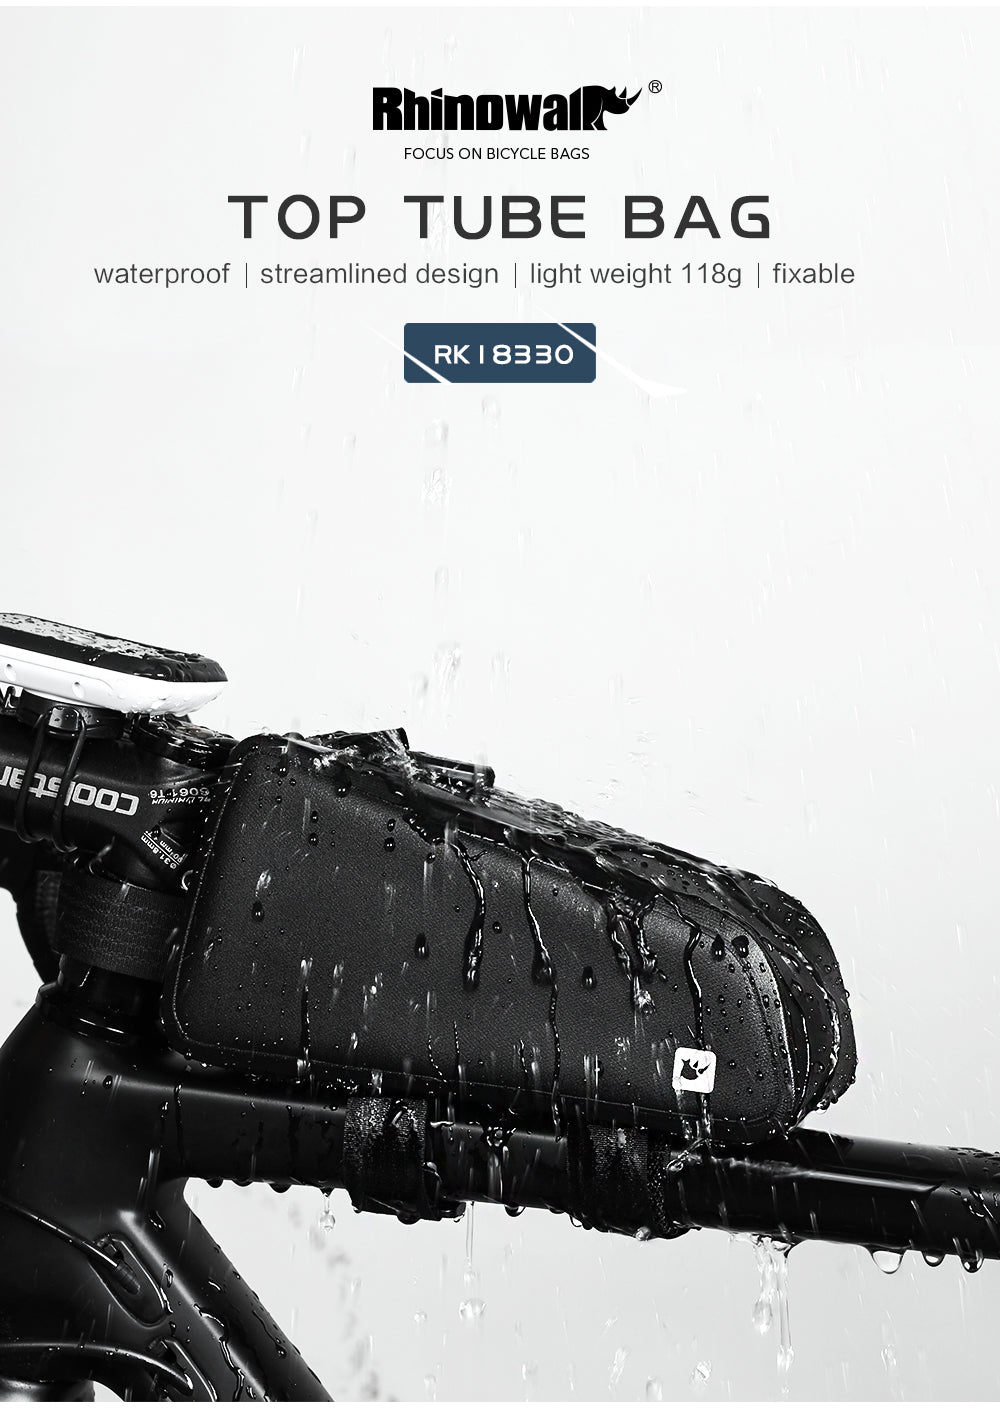 1.2 Liter Waterproof Bike Top Tube Bag - RK18330